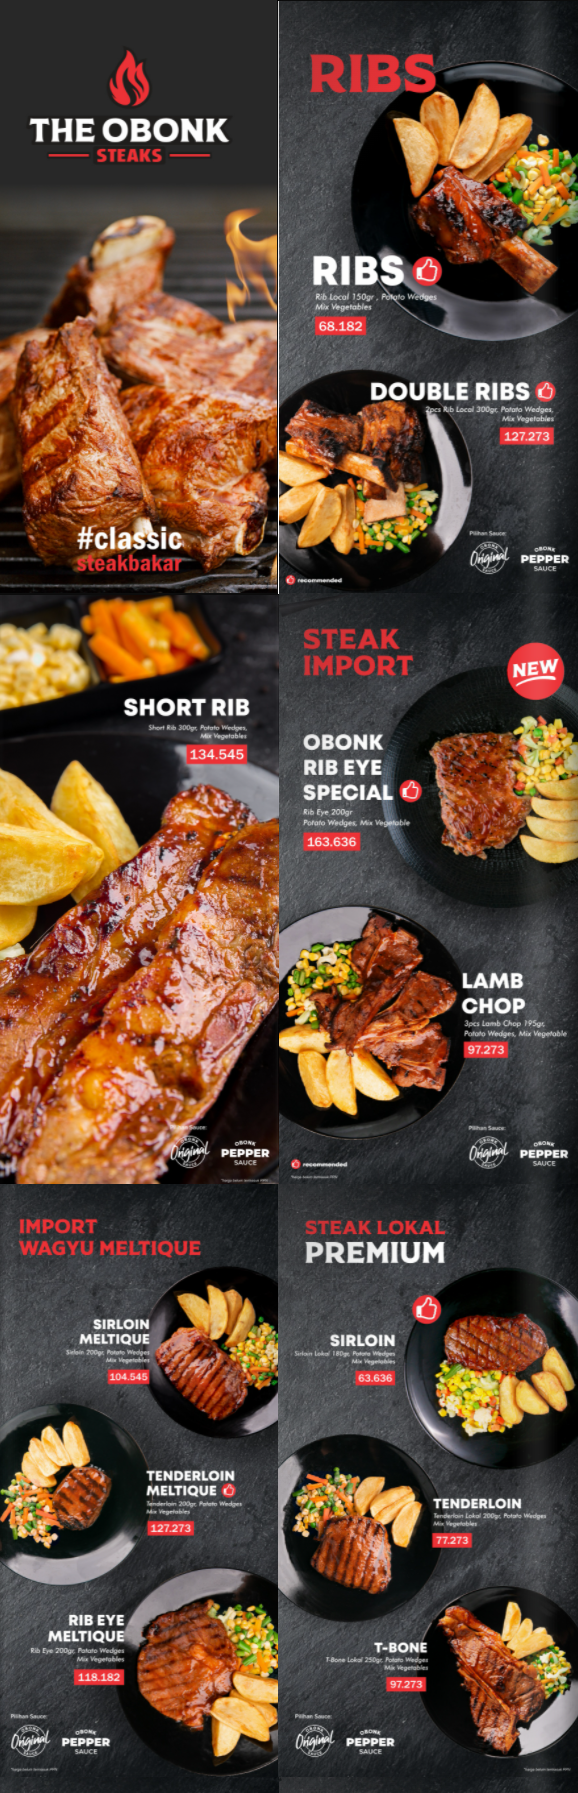 harga menu the obonk steak